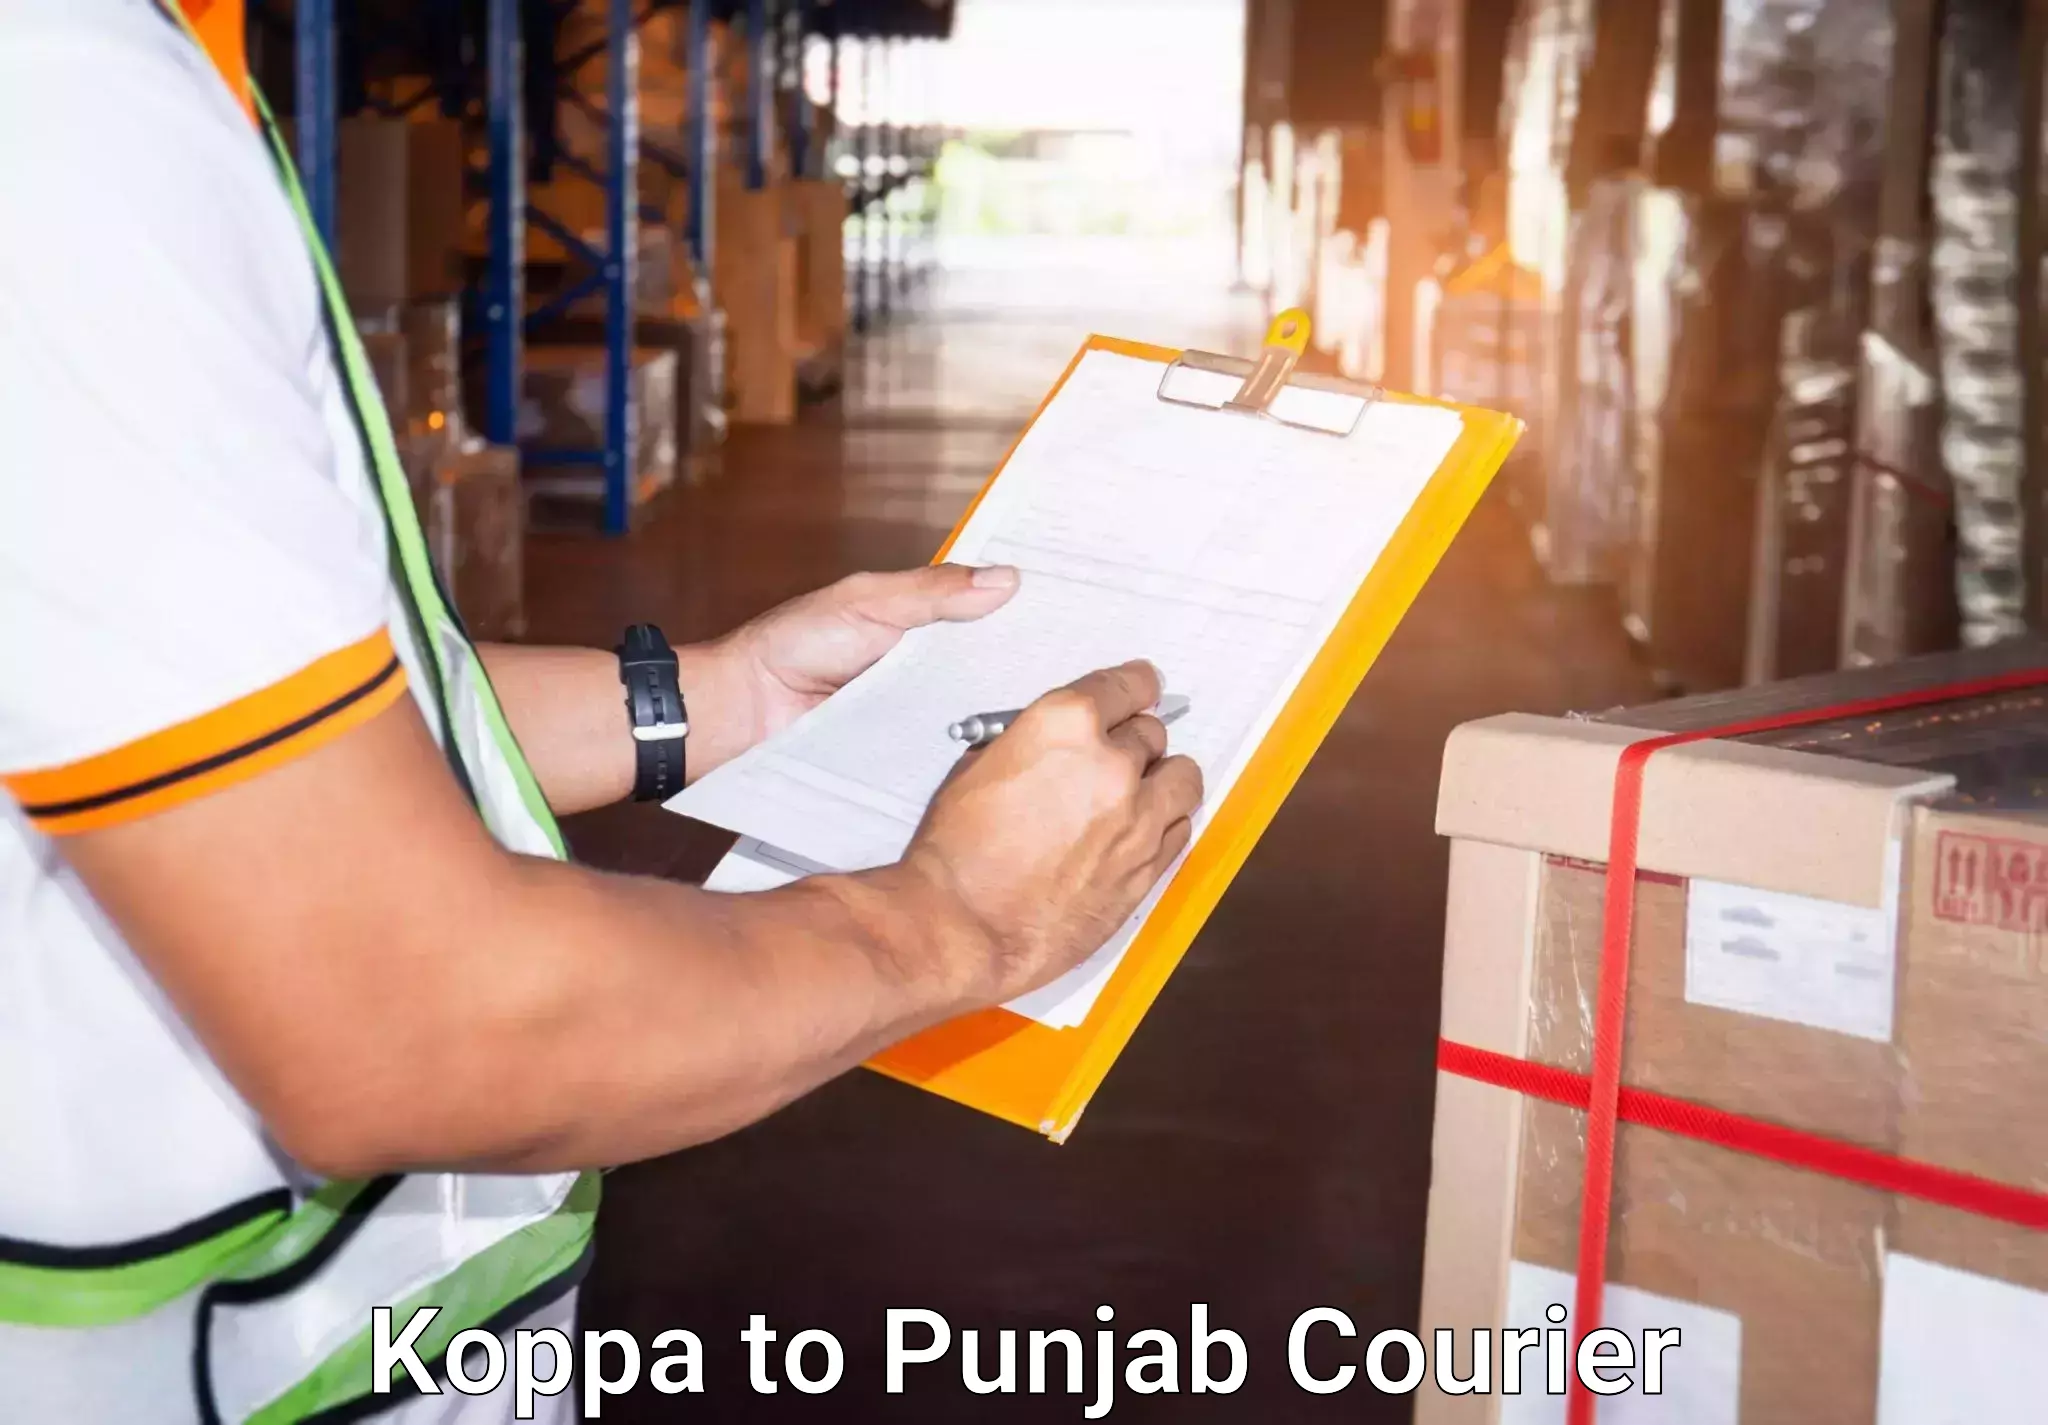 Baggage courier service Koppa to Punjab